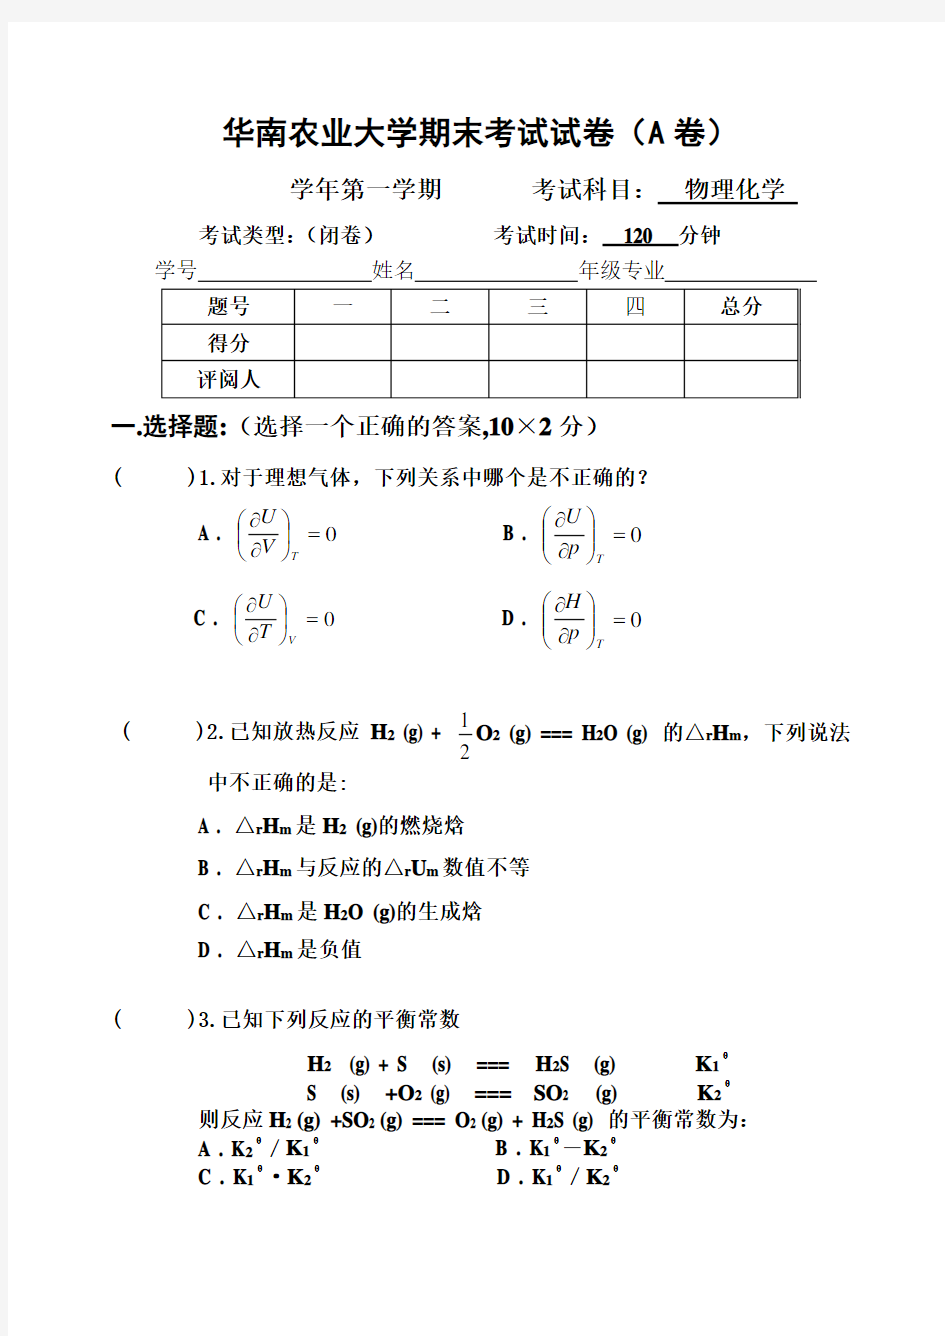 华南农业大学2010物理化学期末考试试卷